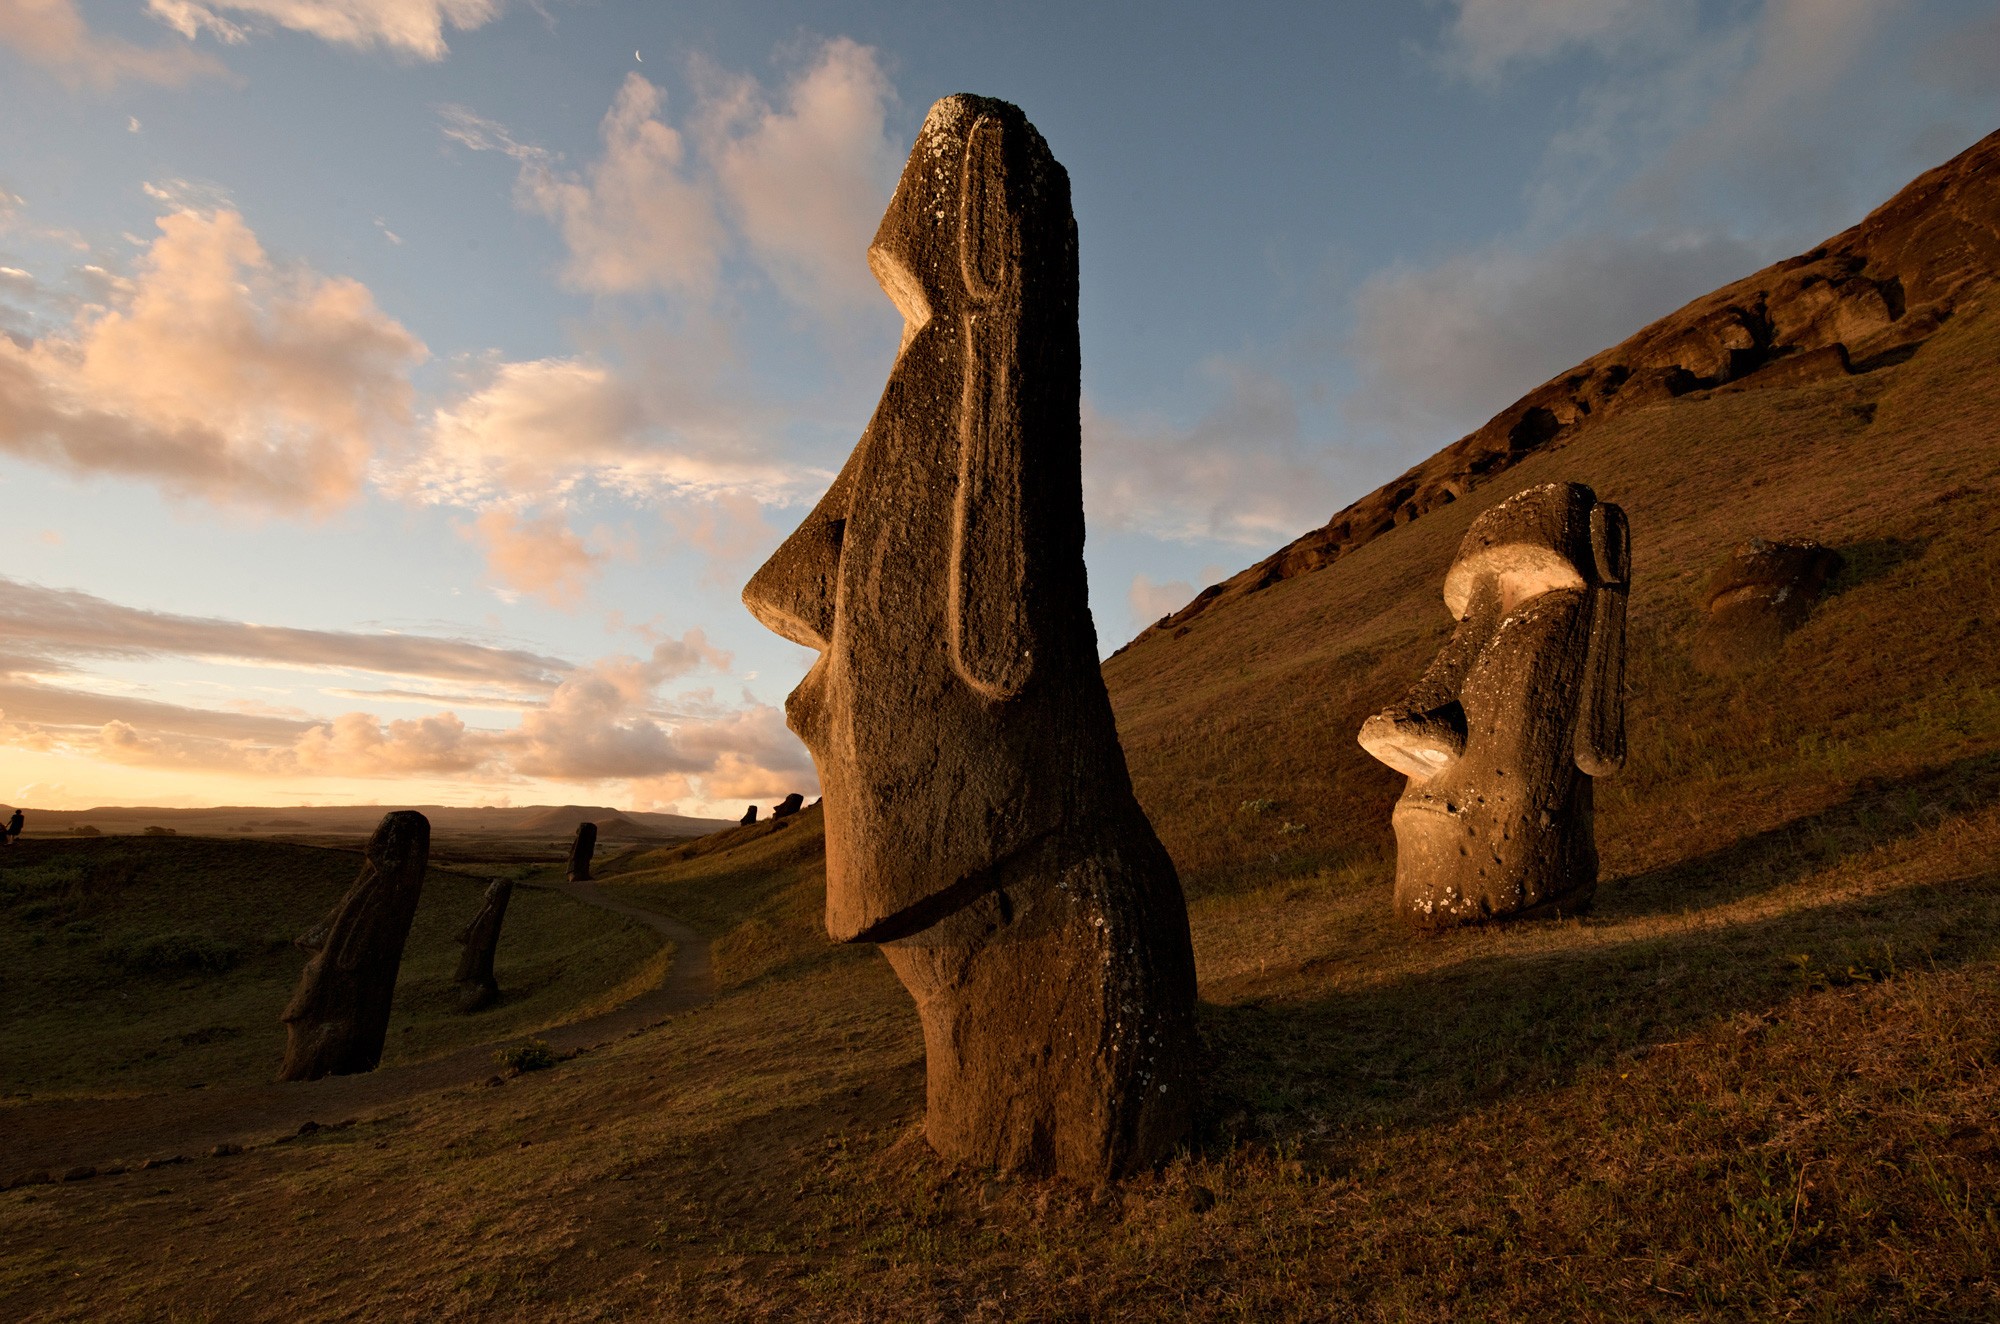 Разгаданные чудеса. Каменные статуи Моаи остров Пасхи Чили. Моаи на острове Пасхи. Национальный парк Рапануи (остров Пасхи). Моаи (статуи острова Пасхи), Чили.